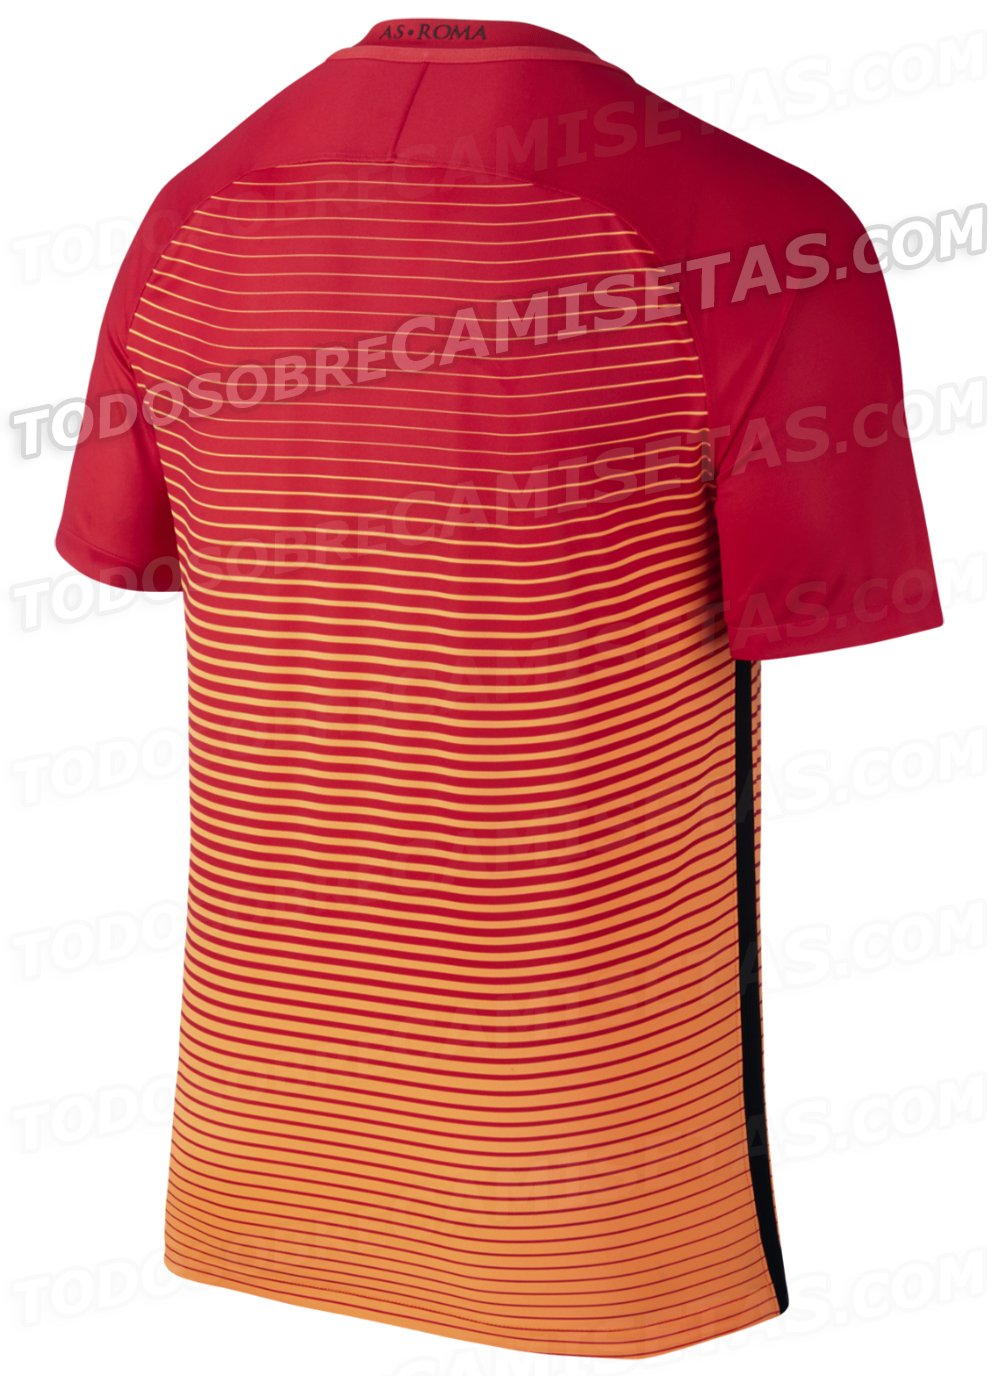 AS Roma 2016-17 Nike Third Kit LEAKED